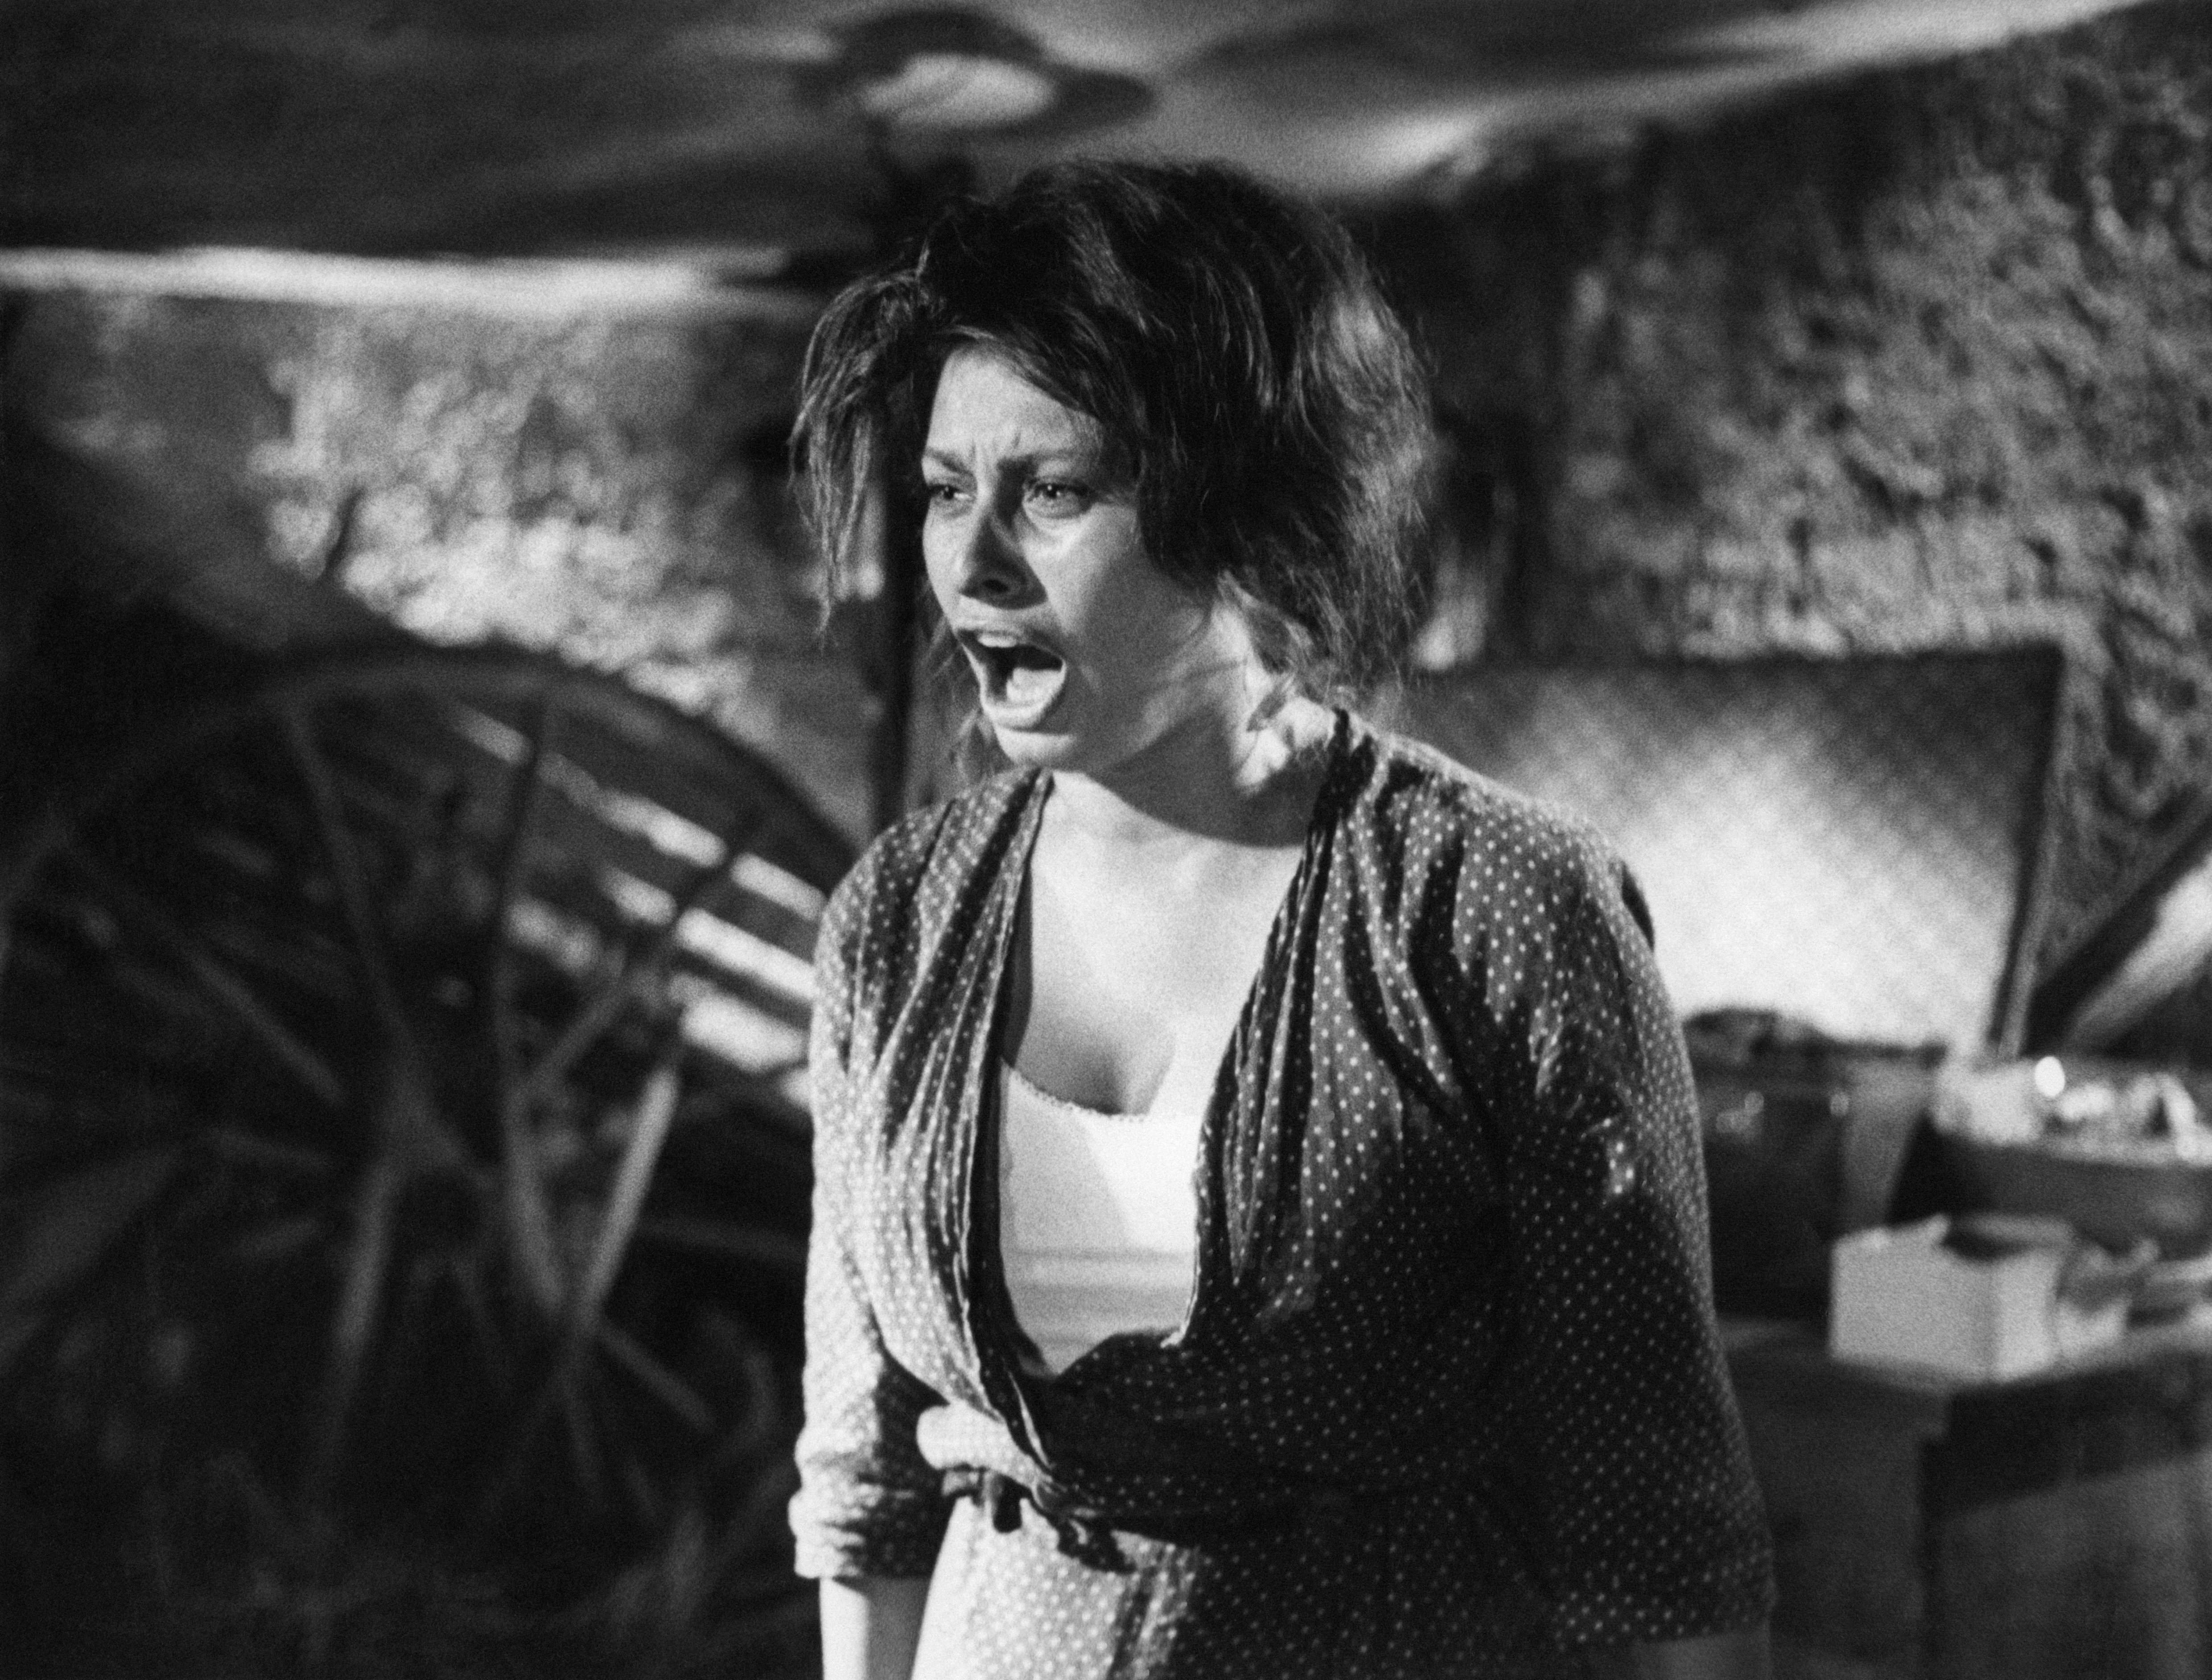 Sophia Loren as (Sofia Villani Scicolone) screaming in despair in the film "Two Women," 1960. | Photo: Getty Images